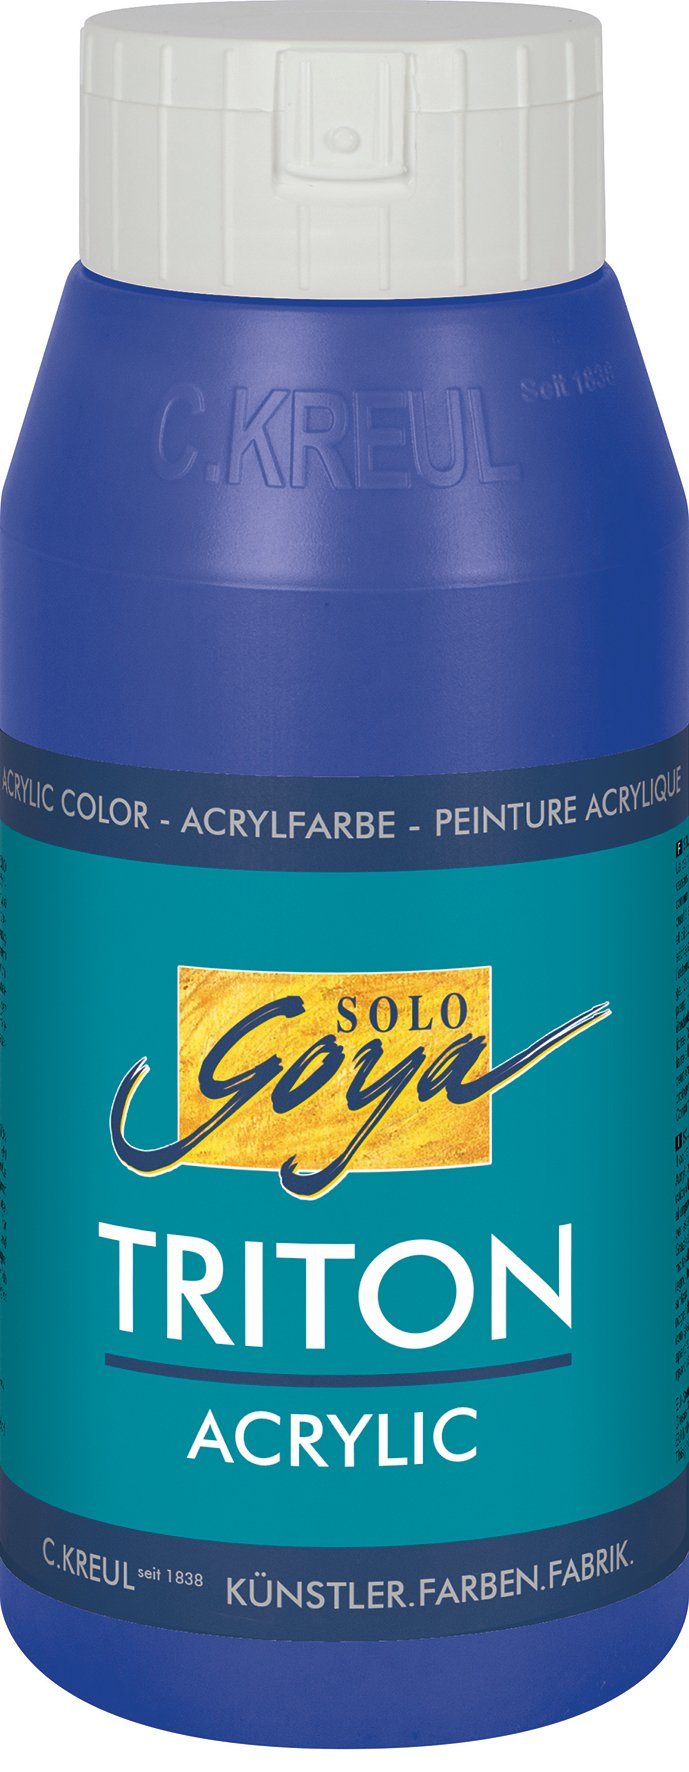 Kreul Acrylfarbe Solo Acrylic, 750 Triton Goya ml Ultramarinblau